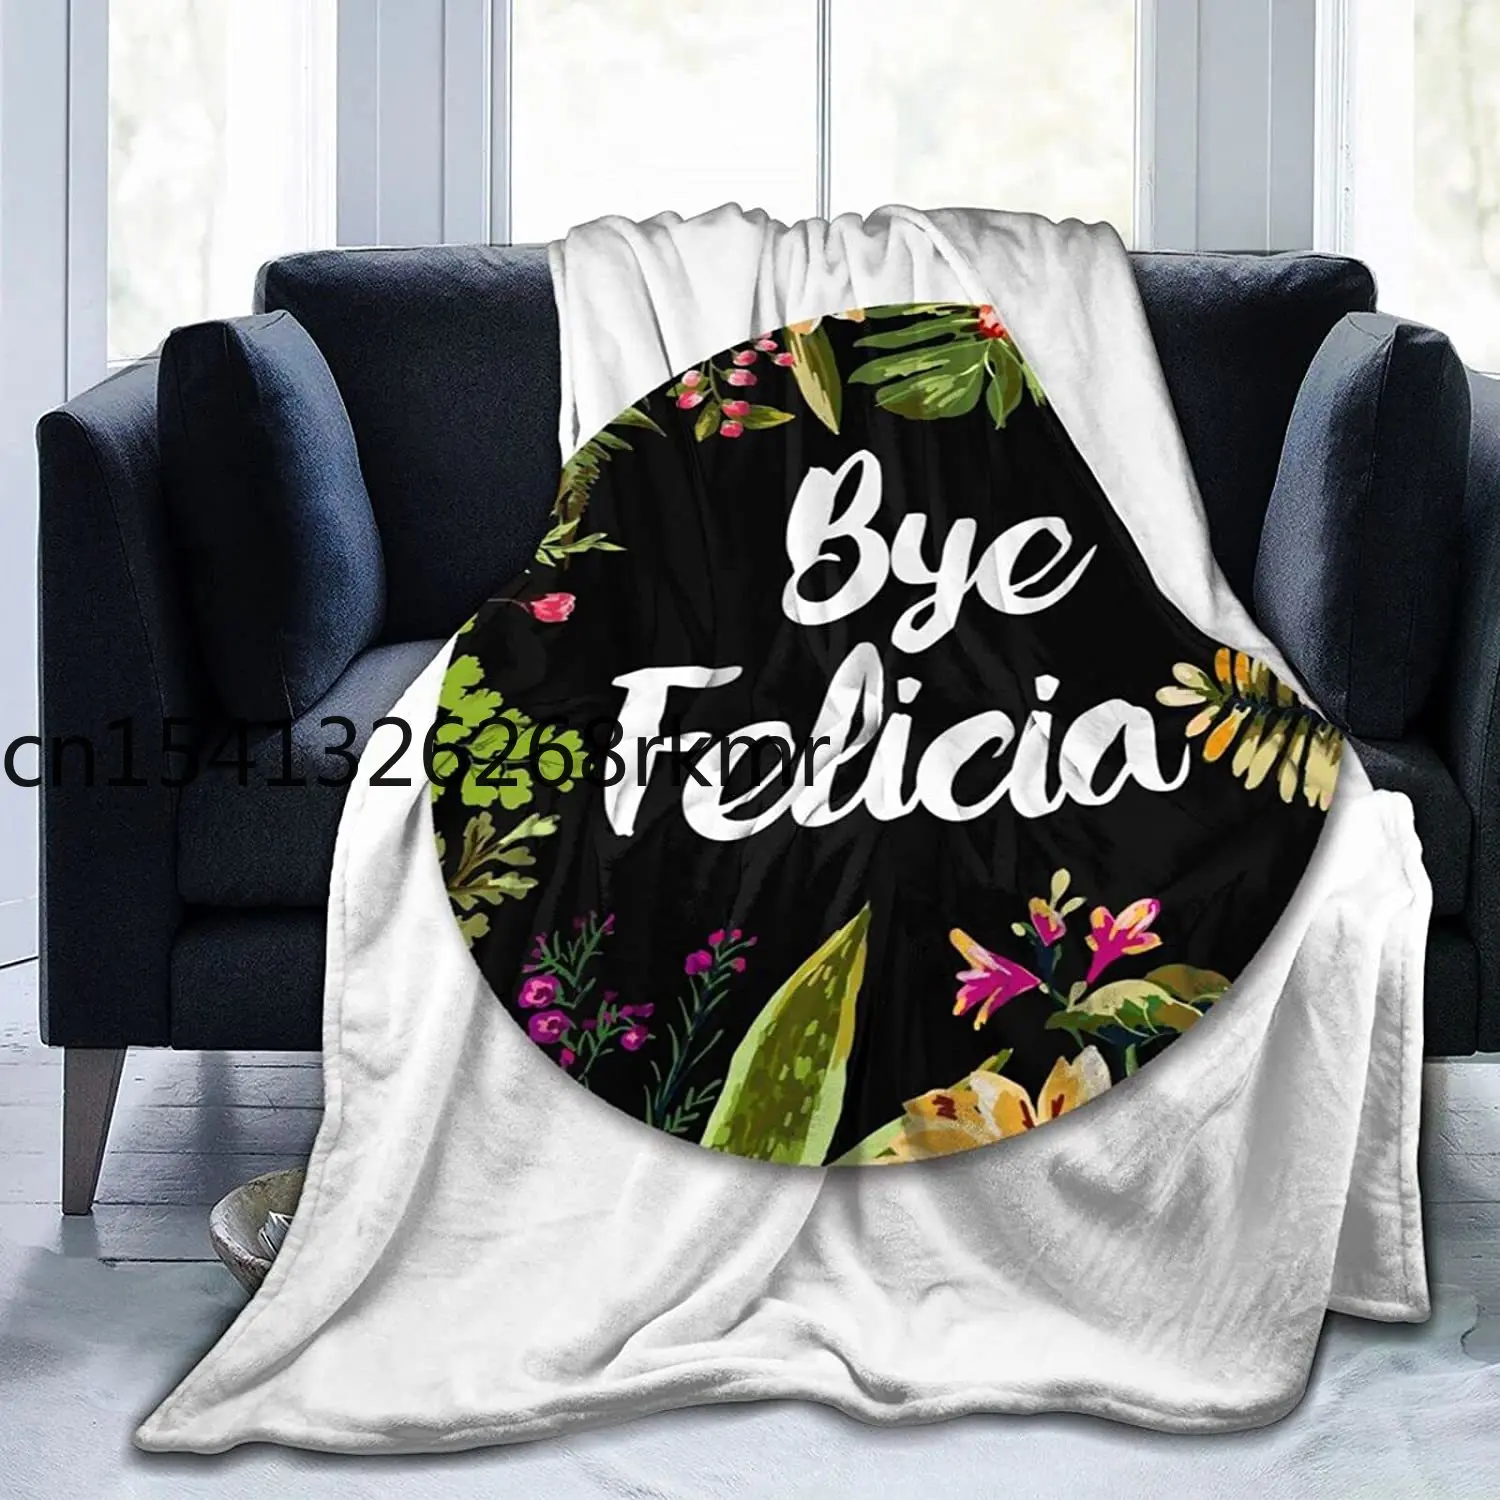 

Супер мягкое теплое Флисовое одеяло Bye Felicia, удобное фланелевое одеяло, всесезонное одеяло, подходит для спальни, кровати и дивана